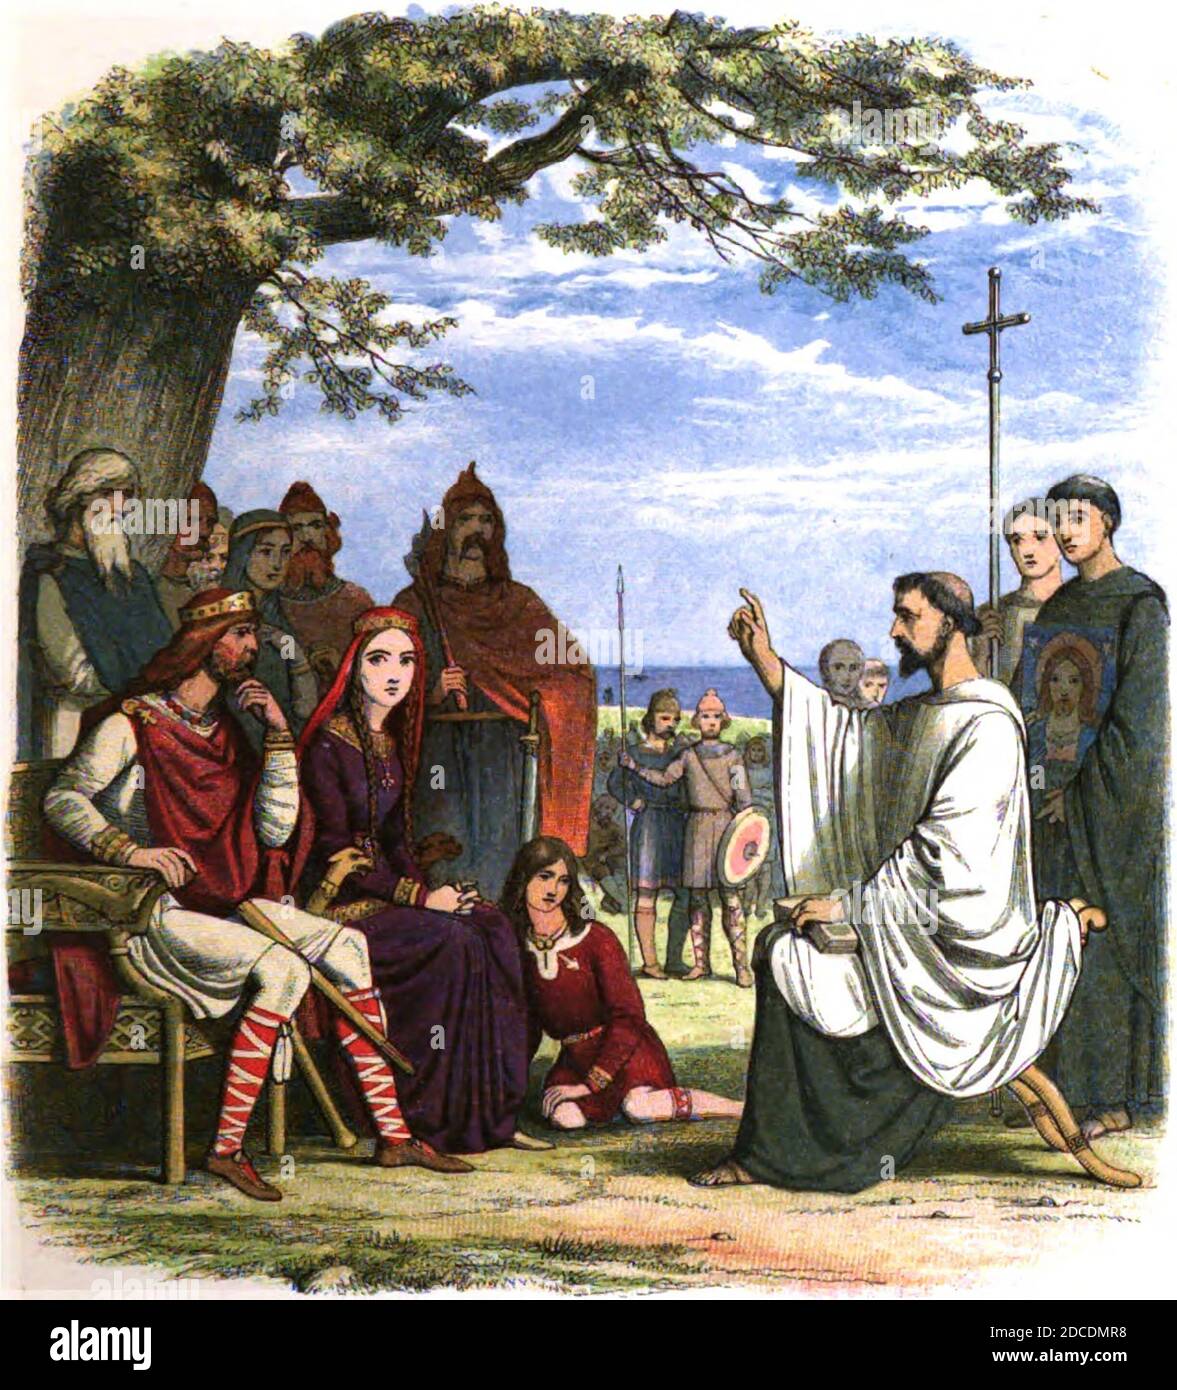 JAMES DOYLE (1822-1892) ilustrador y anticuario inglés. "Agustín predicando ante el rey Ethelbert" de su Crónica de Inglaterra (1864) Foto de stock